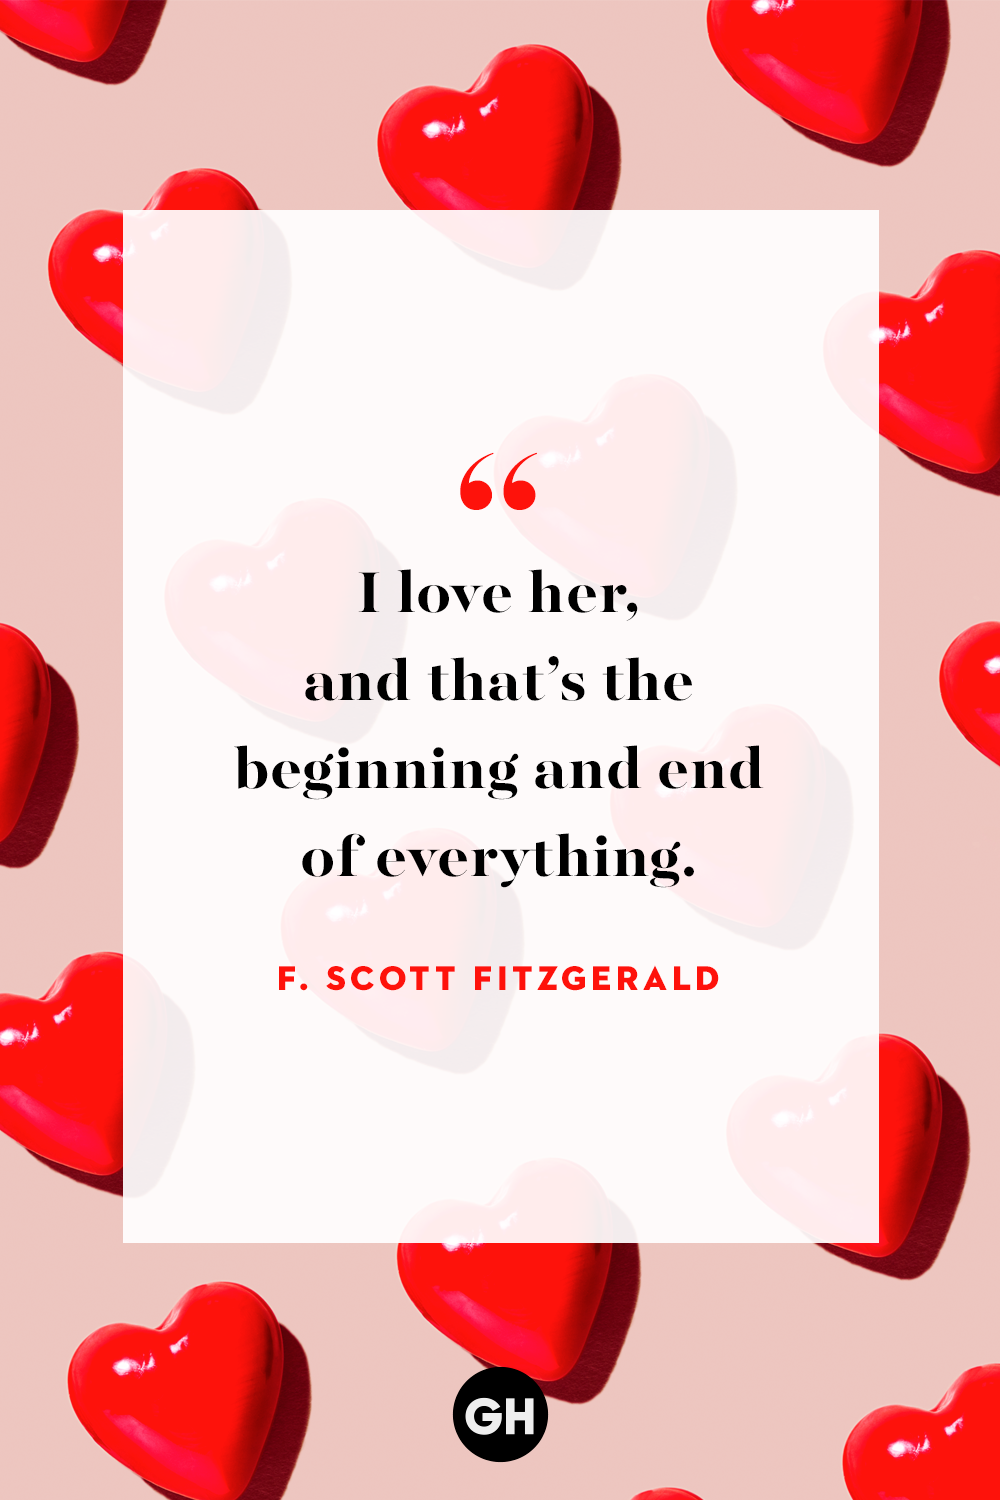 Cute valentine quotes